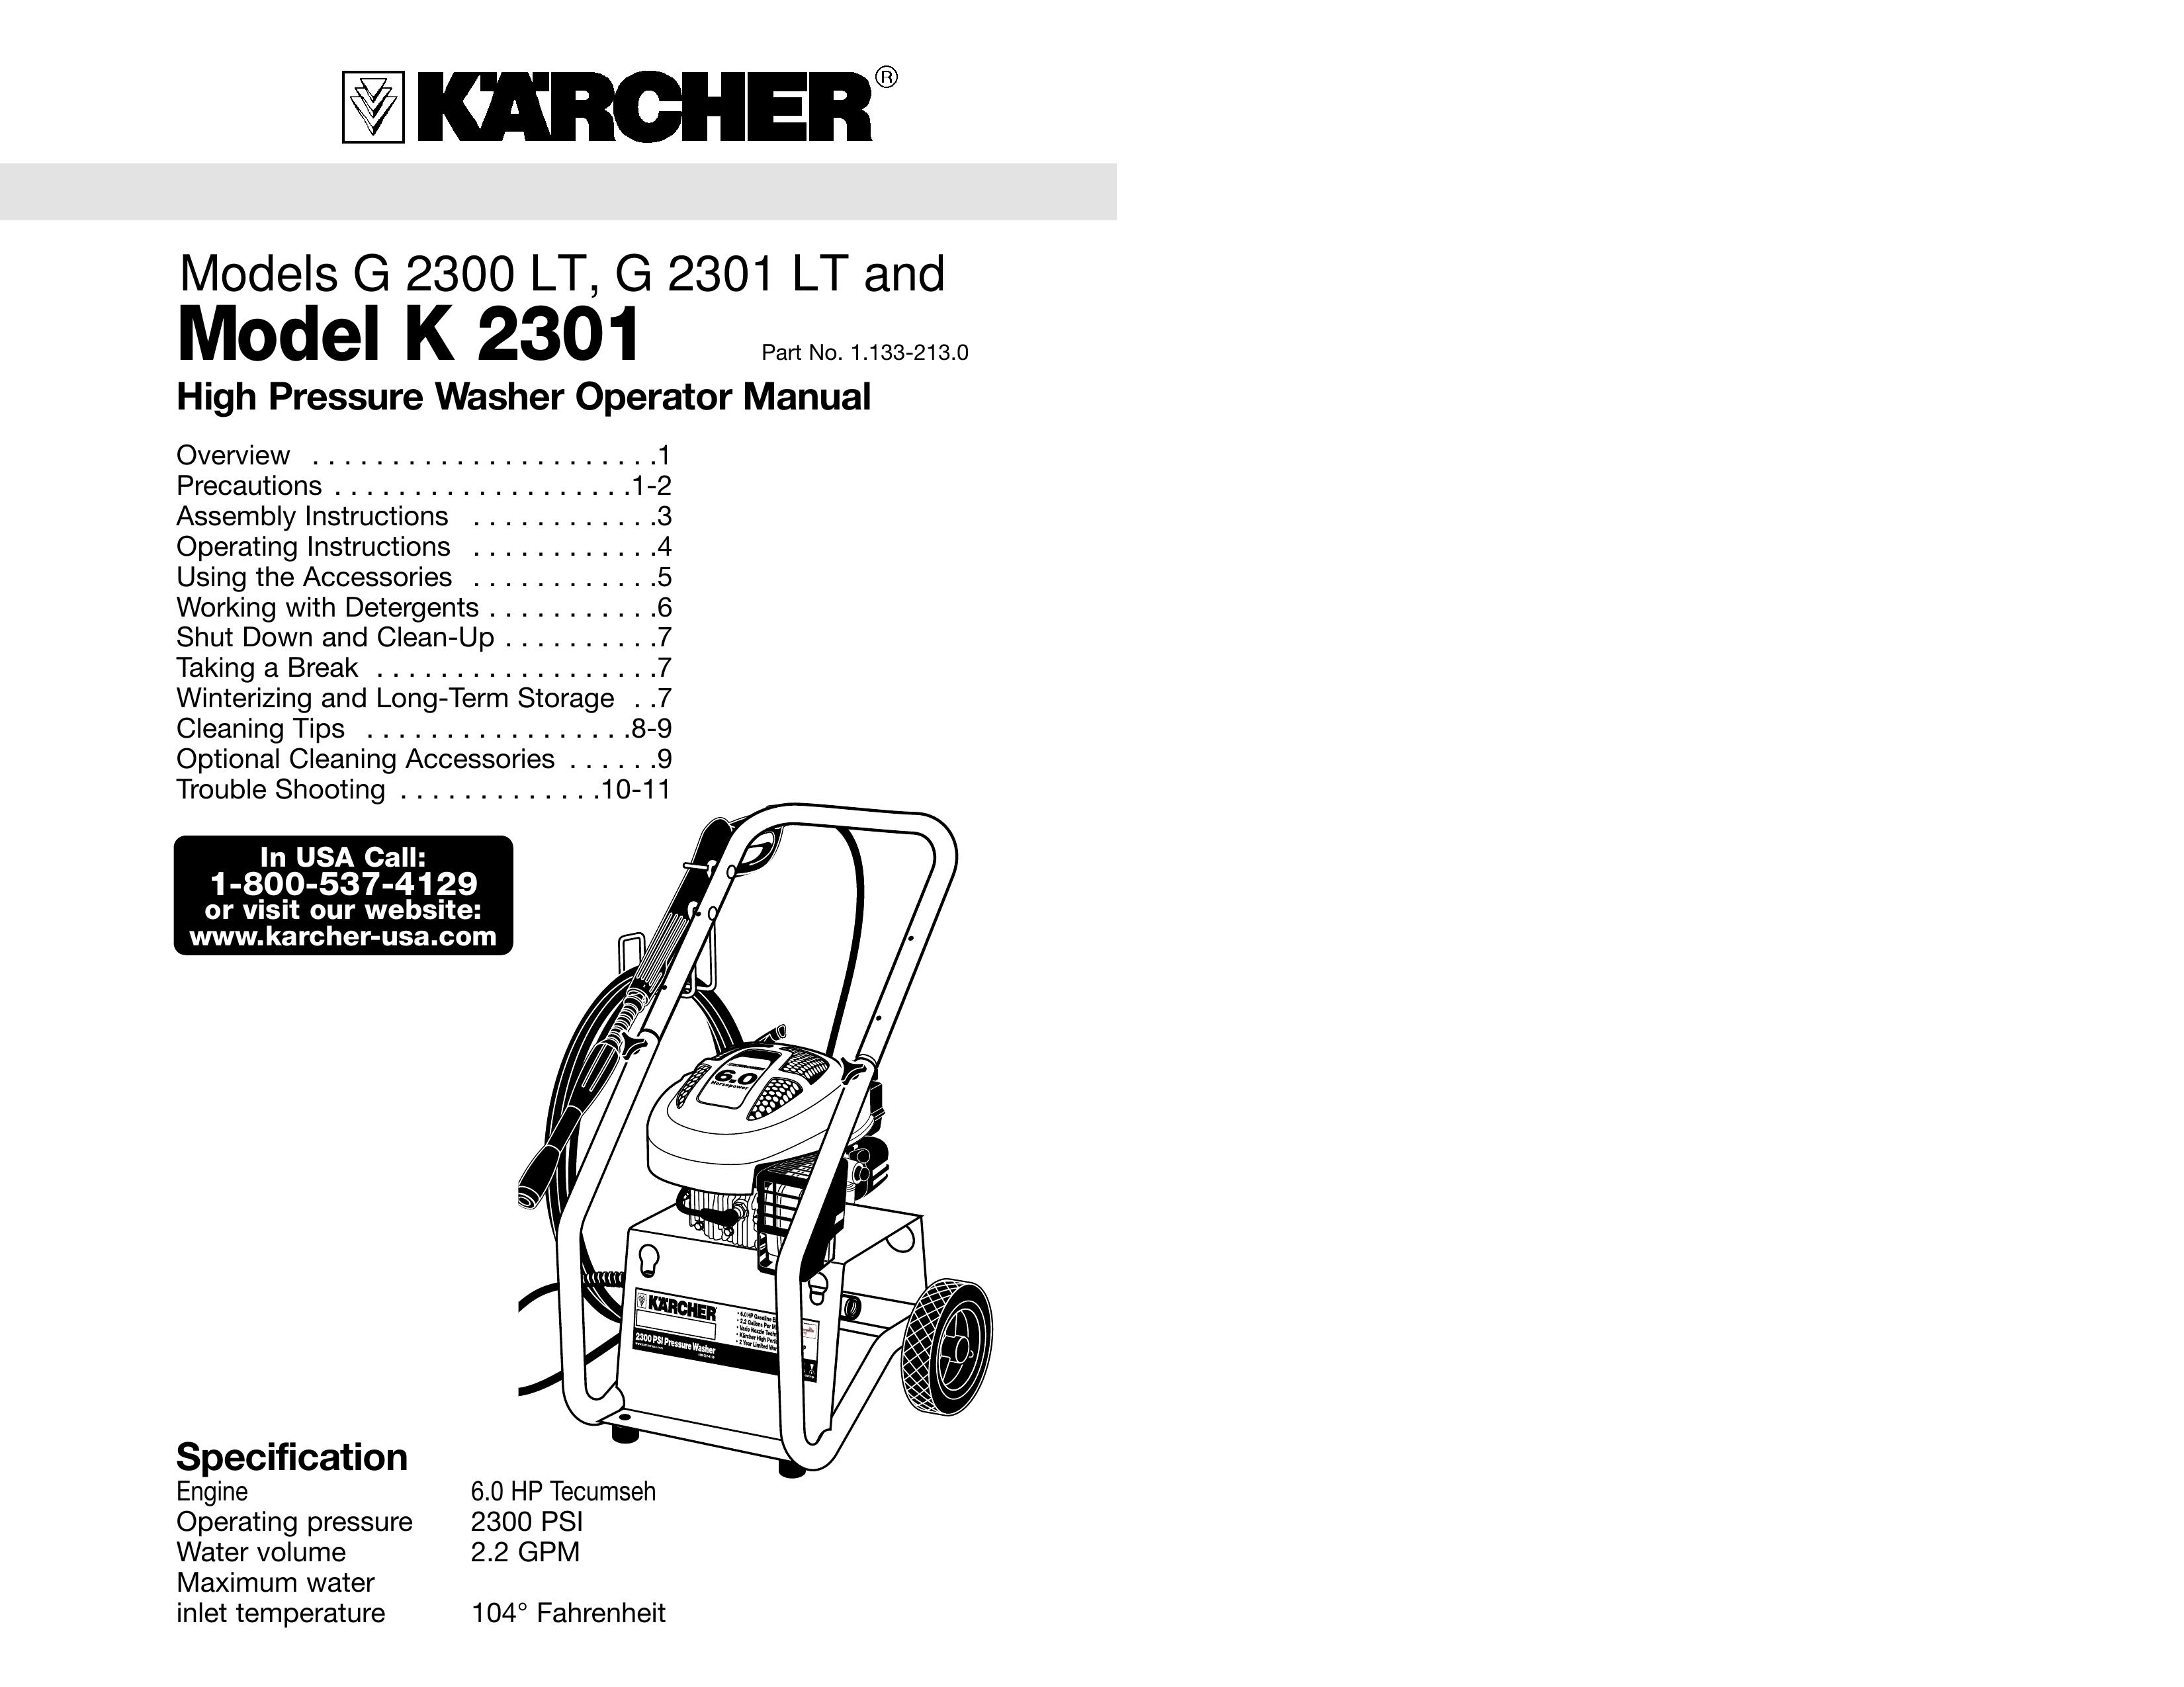 Karcher G 2300 LT, G 2301 LT, K 2301 Pressure Washer User Manual